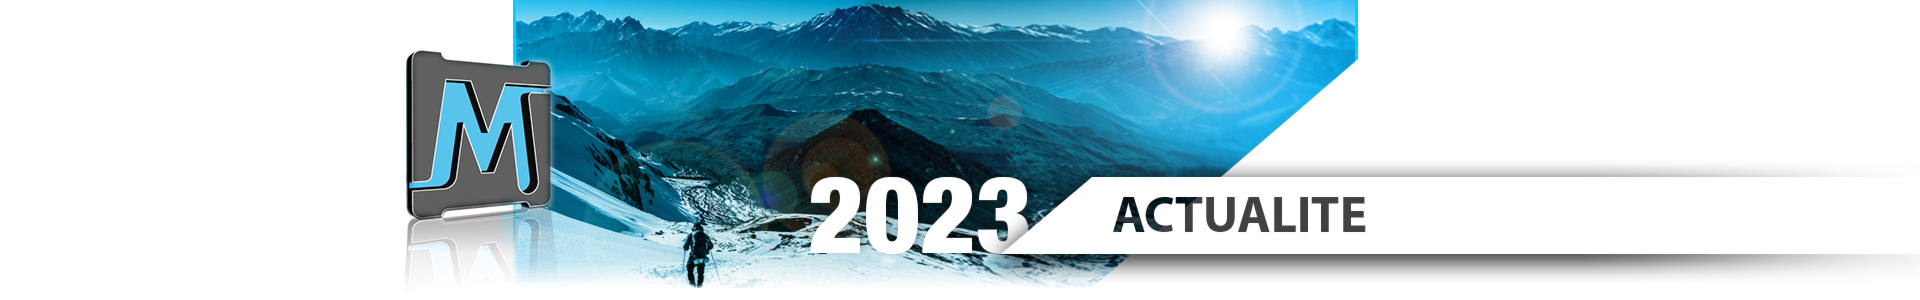 Actualité 2023 : L'ensemble des équipes de la société Meridies vous souhaite une très excellente année 2023 et vous remercie pour votre confiance.